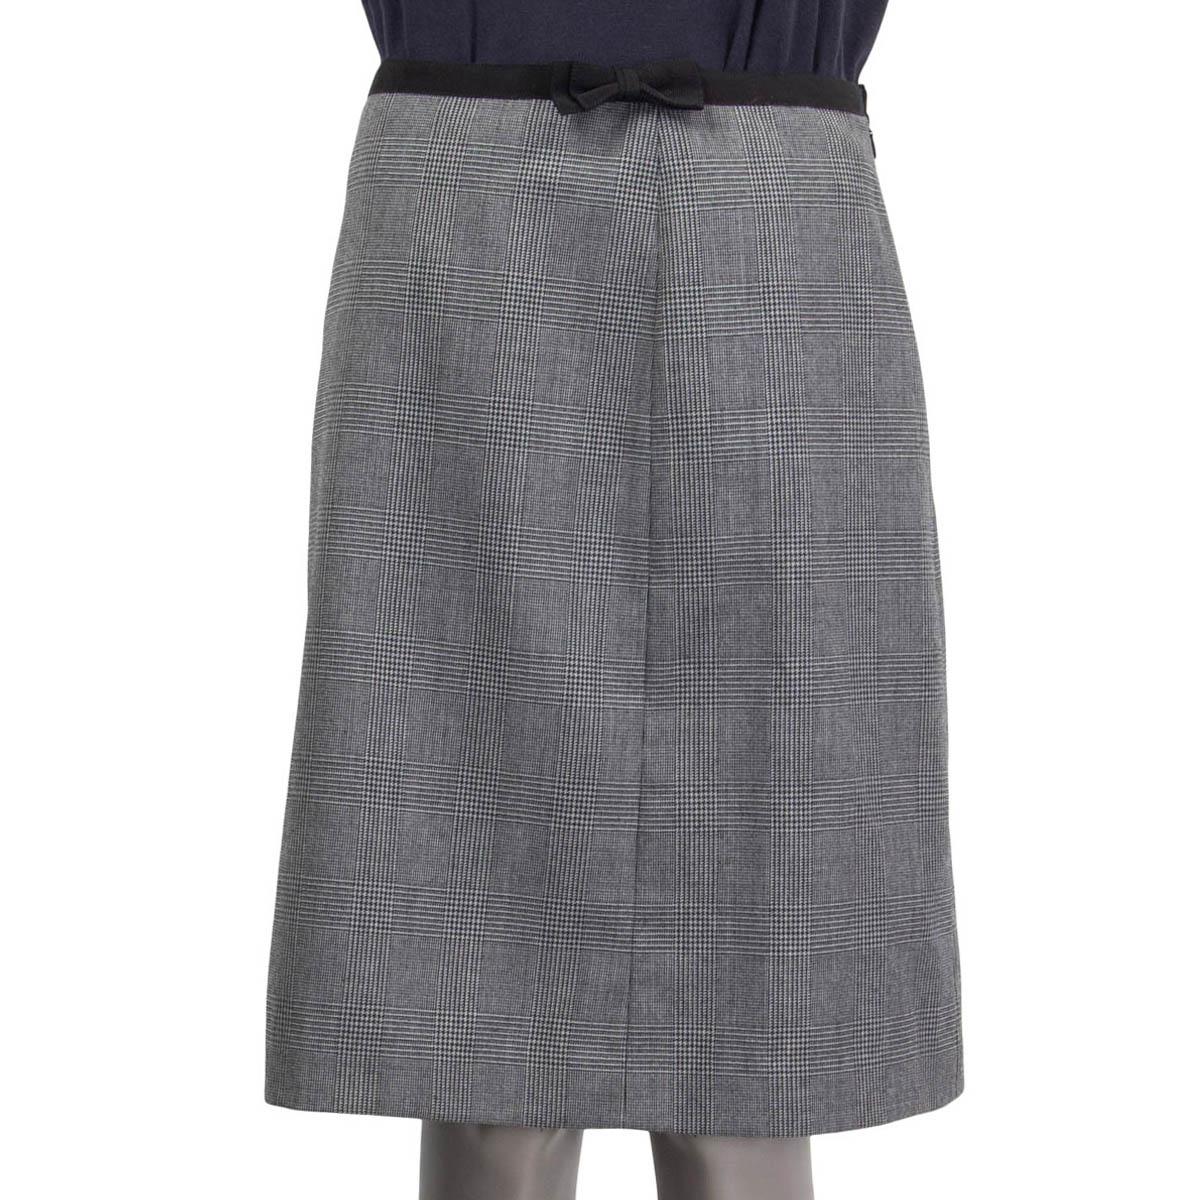 grey knee length skirt